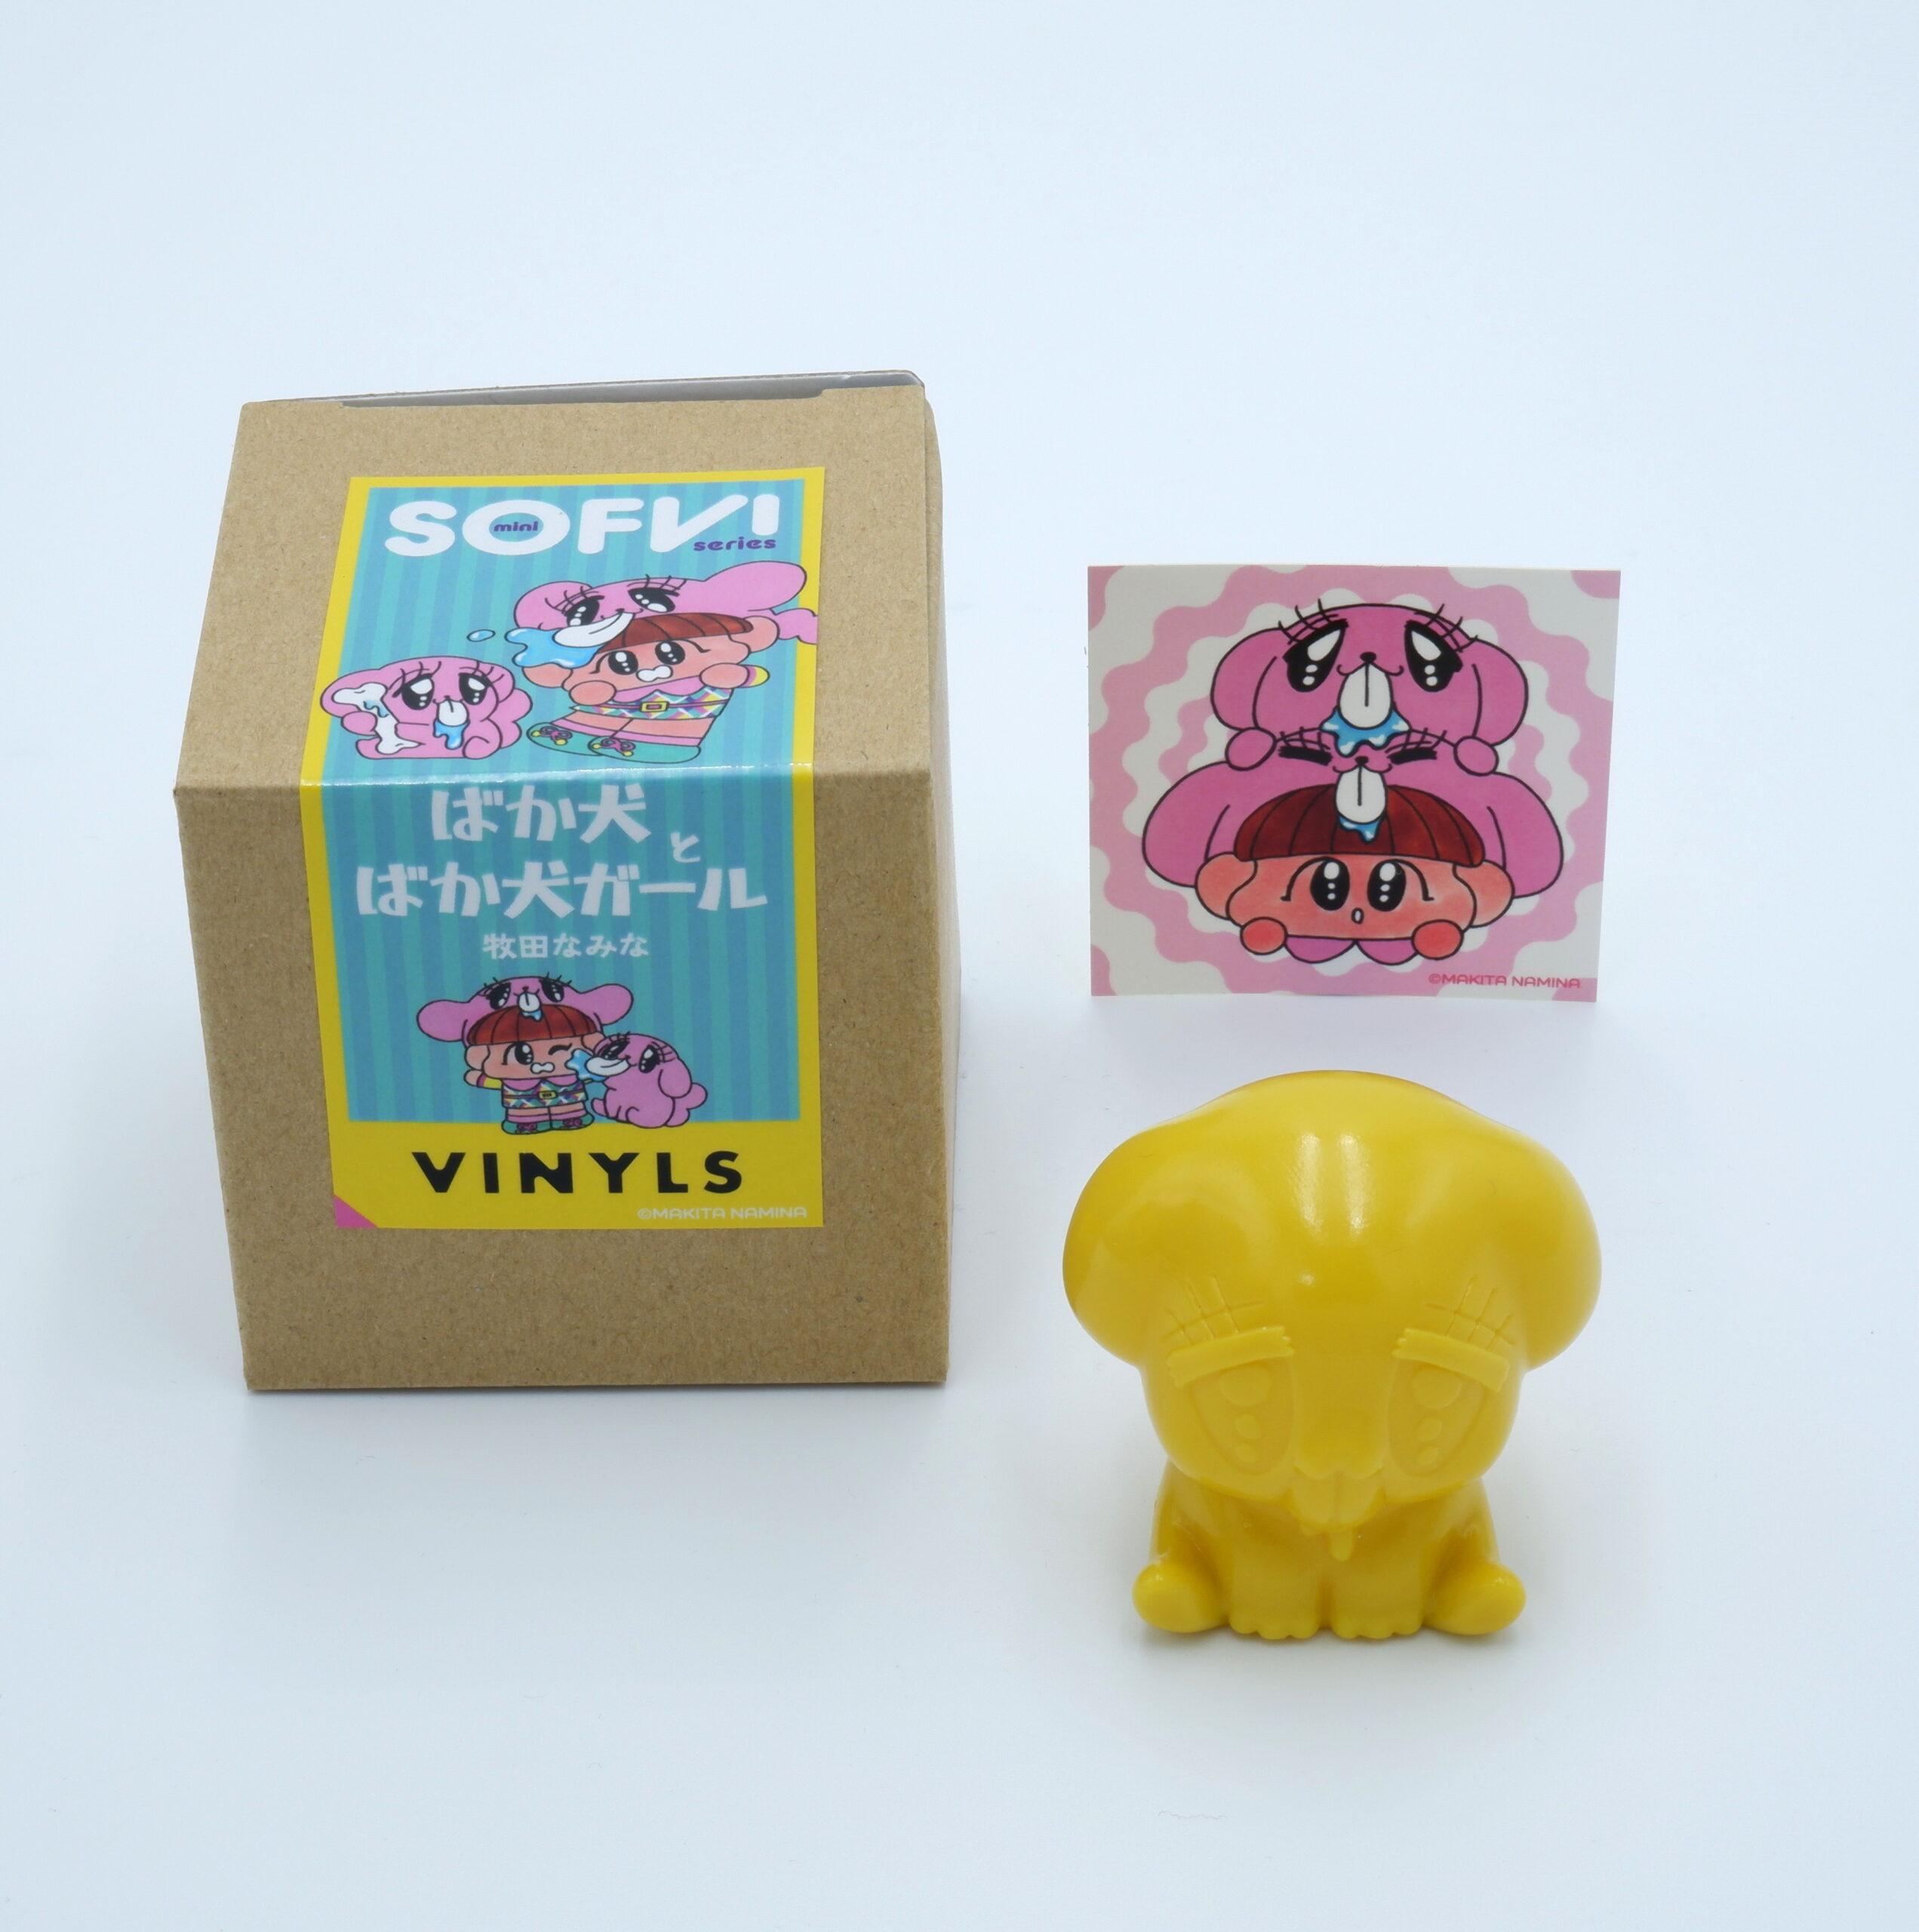 Amazon.co.jp: ぬいぐるみ いぬ 人形 犬のぬいぐるみ インテリア雑貨 店飾り (コーギー) : おもちゃ